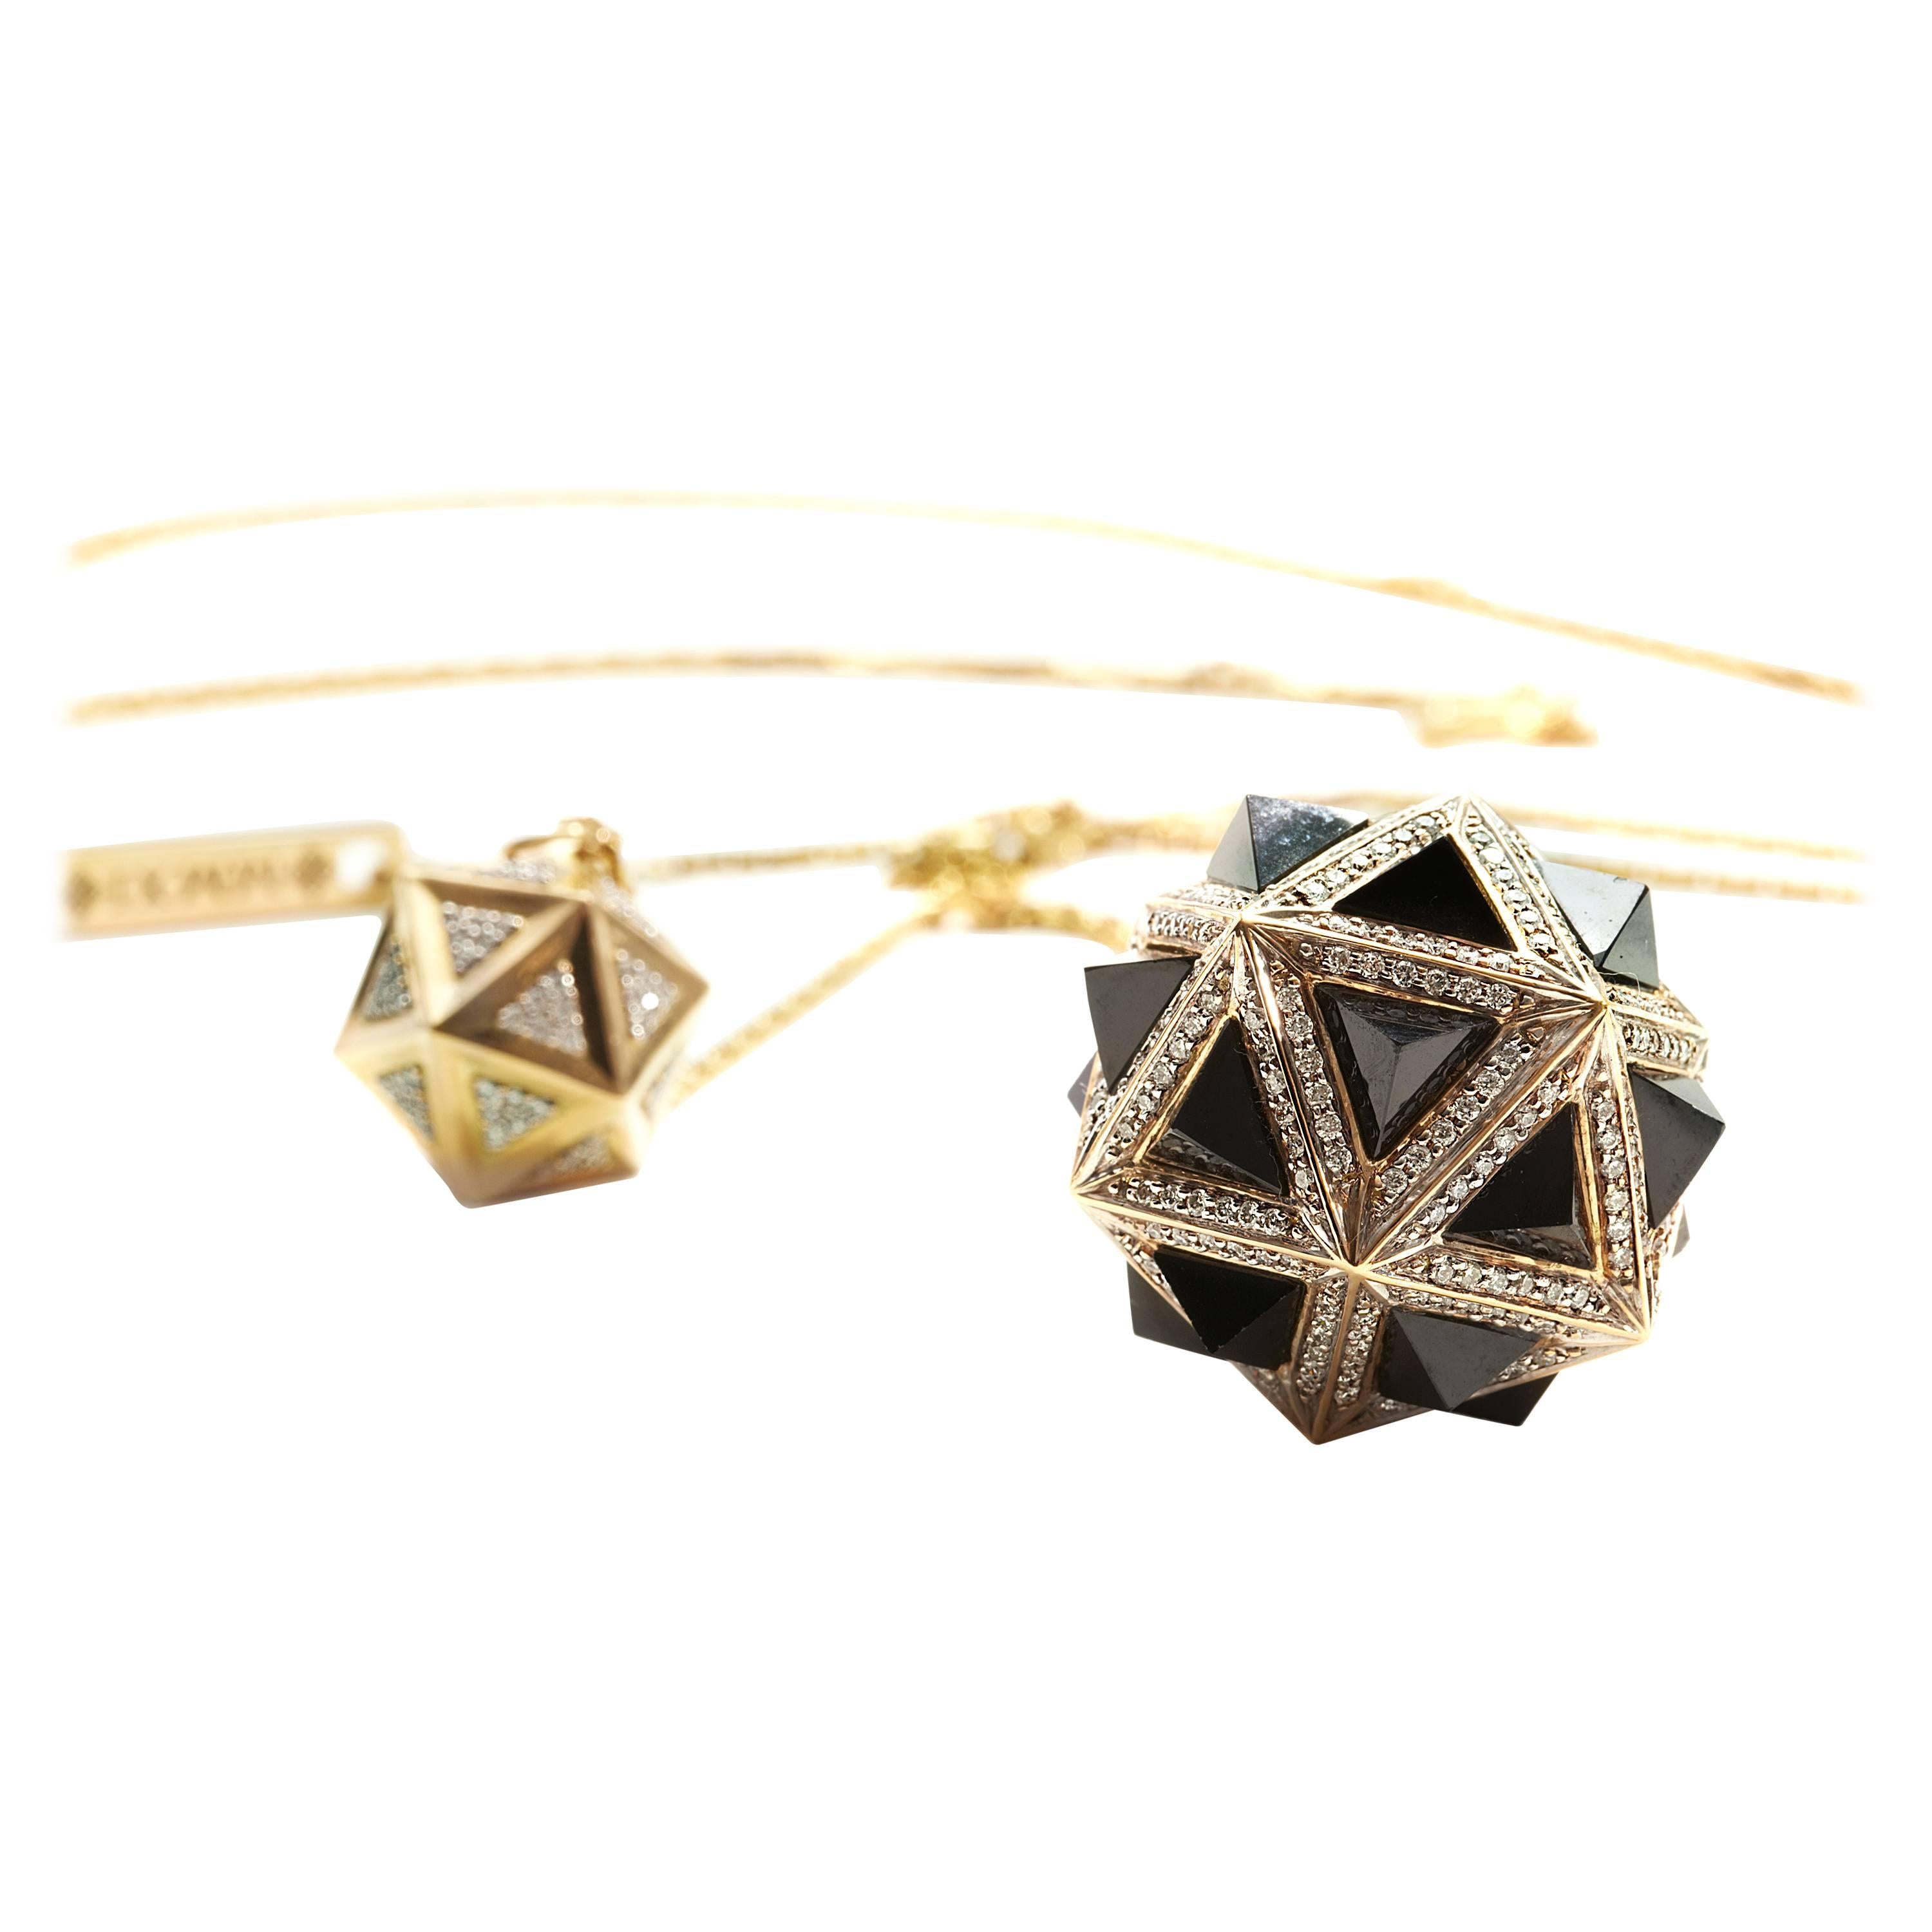  Pendentif double Pyramids en or 18 carats avec diamants Icoso et saphirs noirs